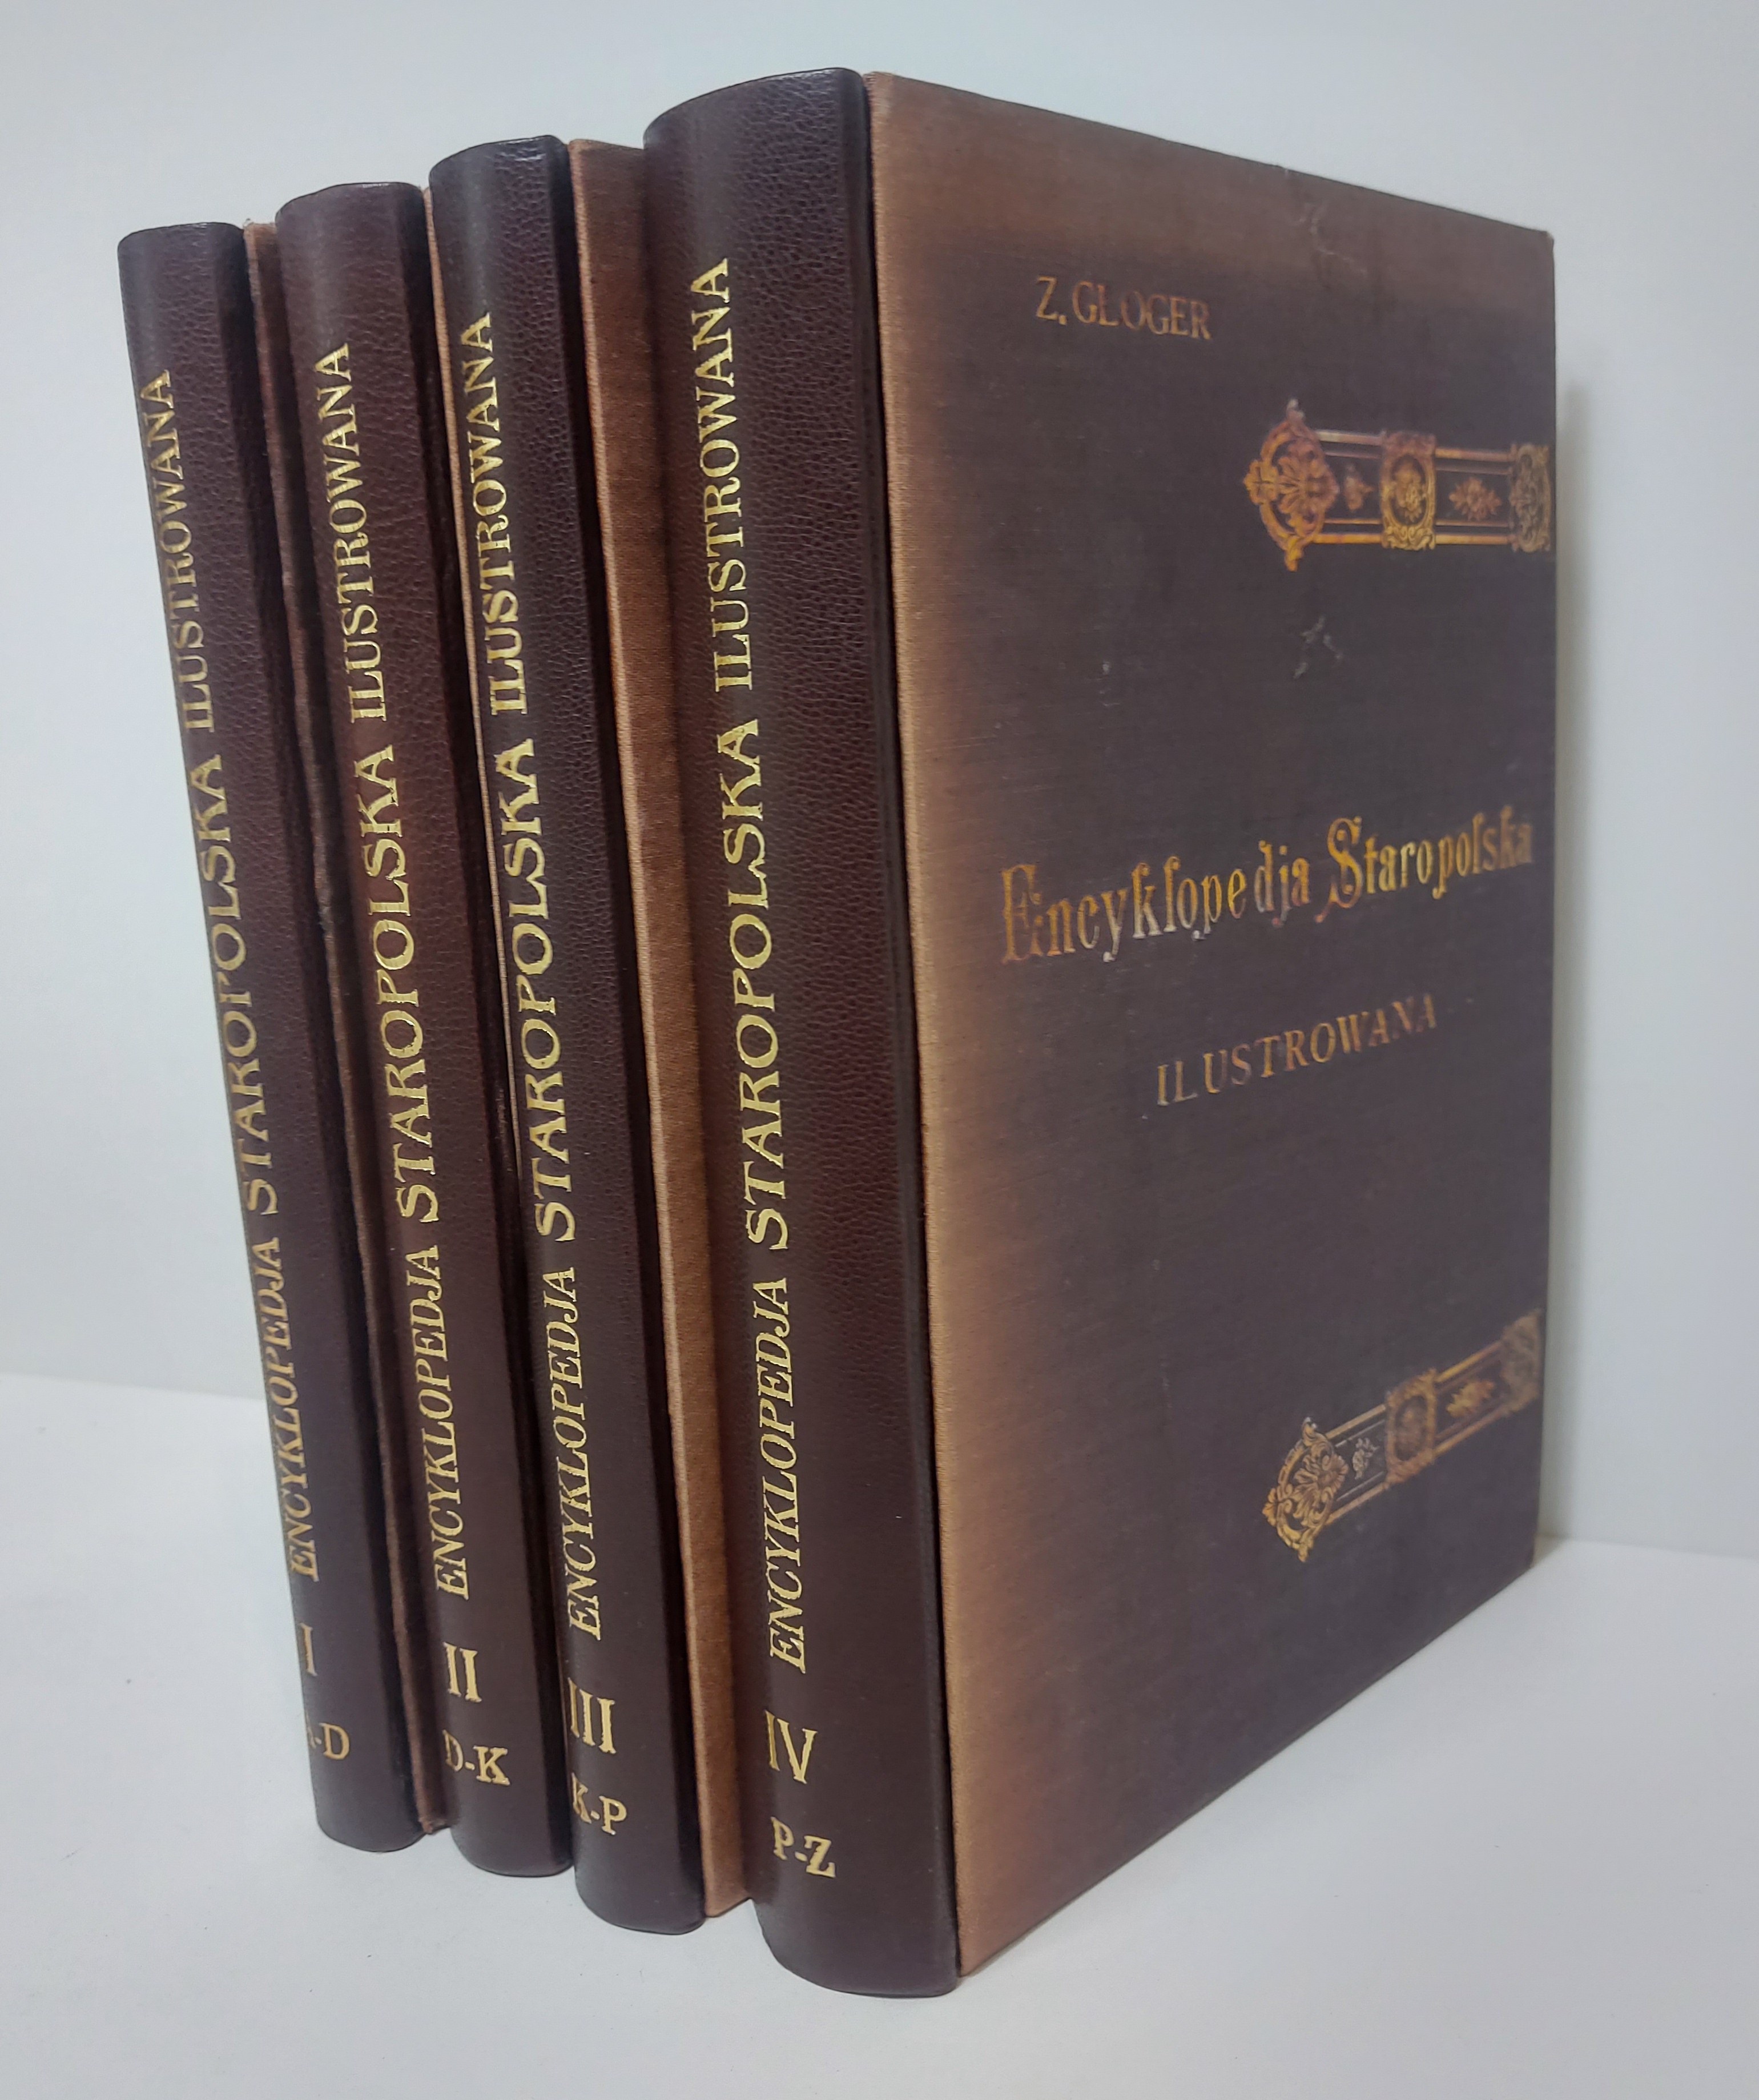 encyklopedia-staropolska-zygmunt-gloger-aukcja-internetowa